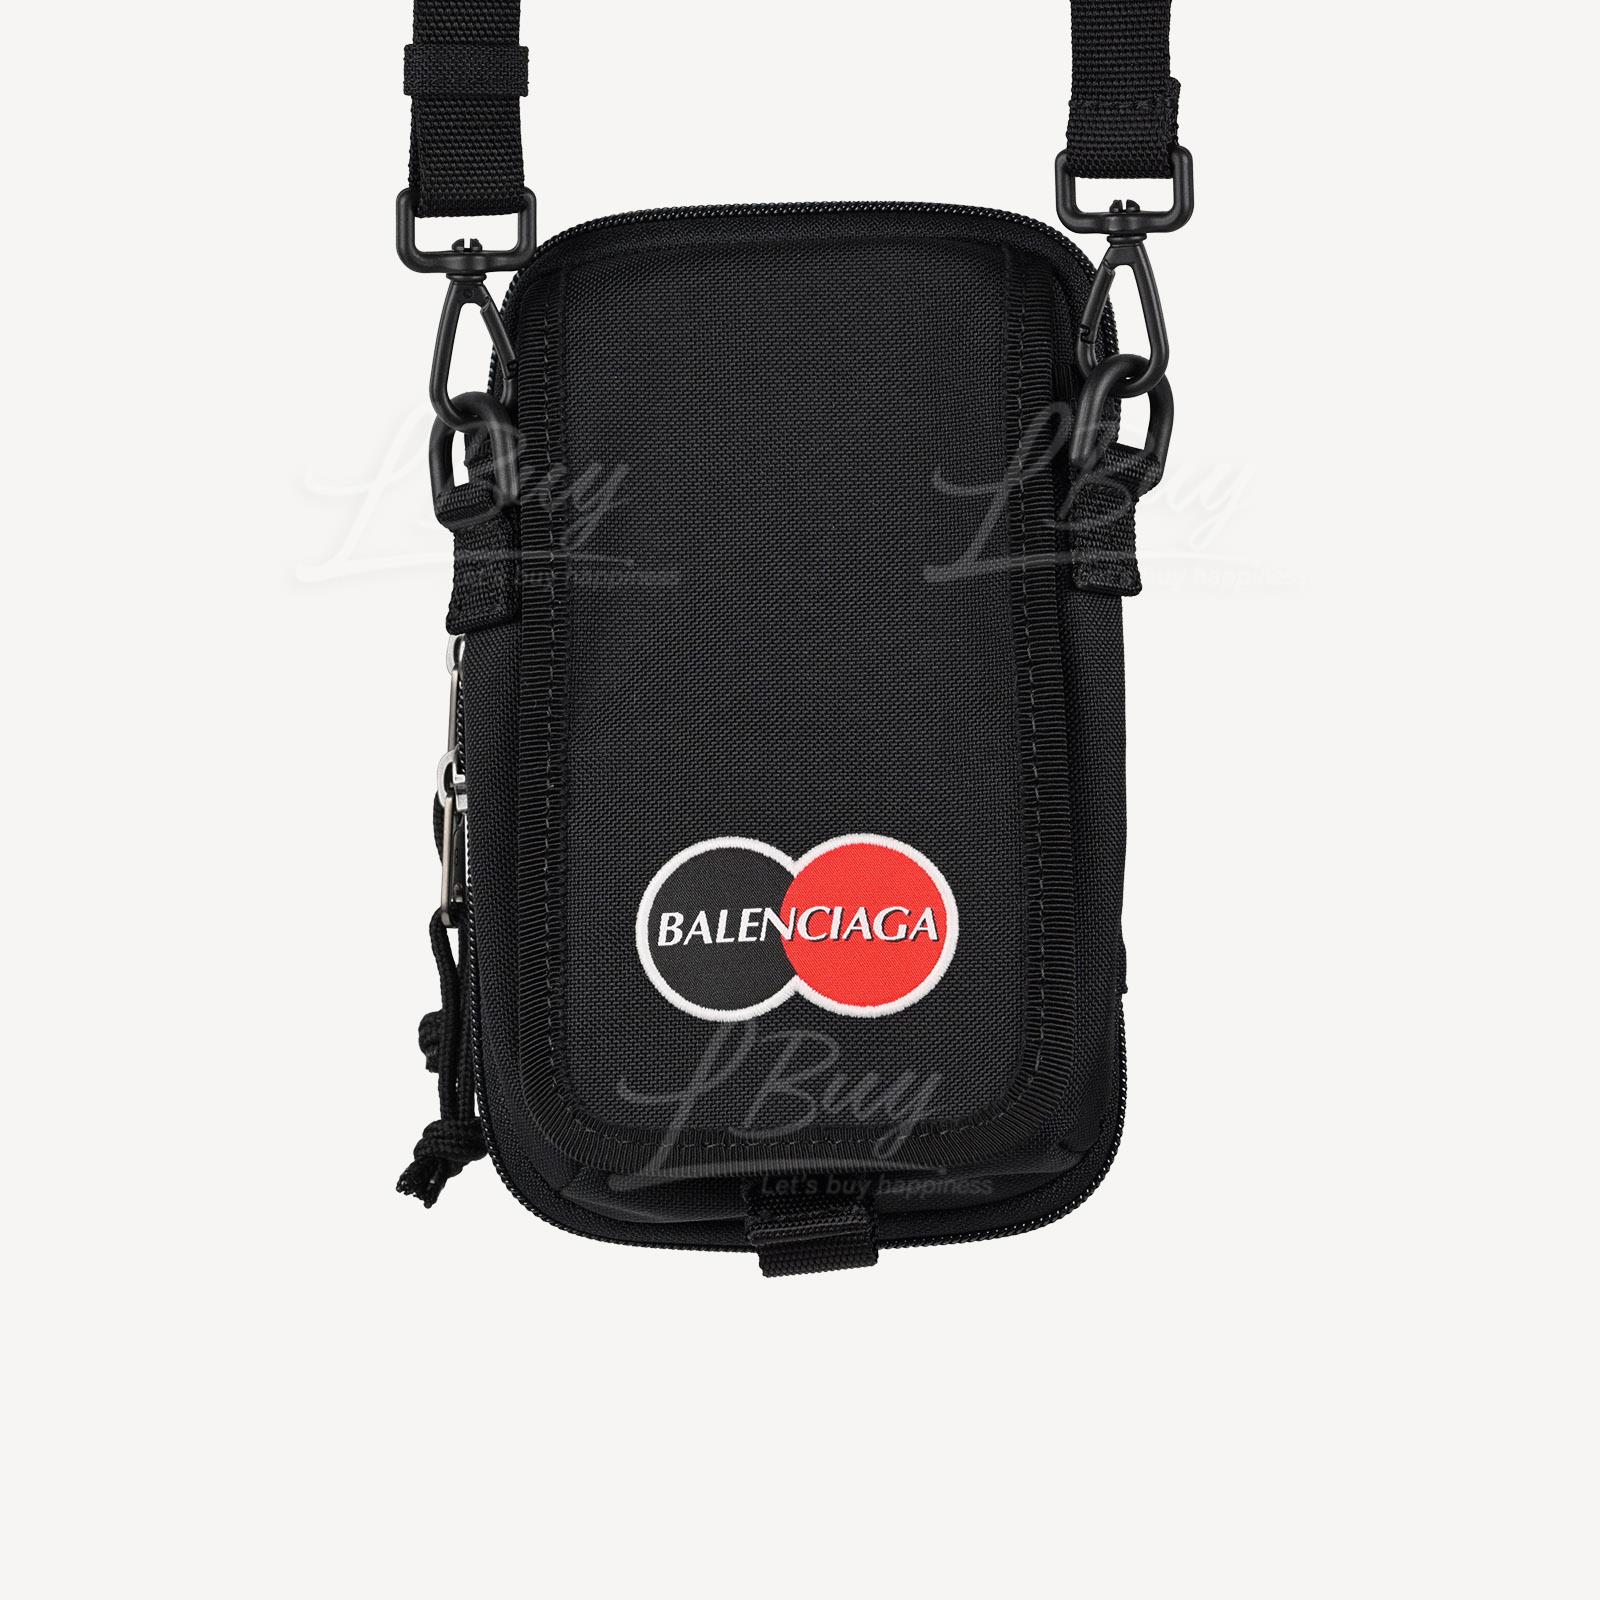 Balenciaga Mastercard Logo Black Crossbody Bag